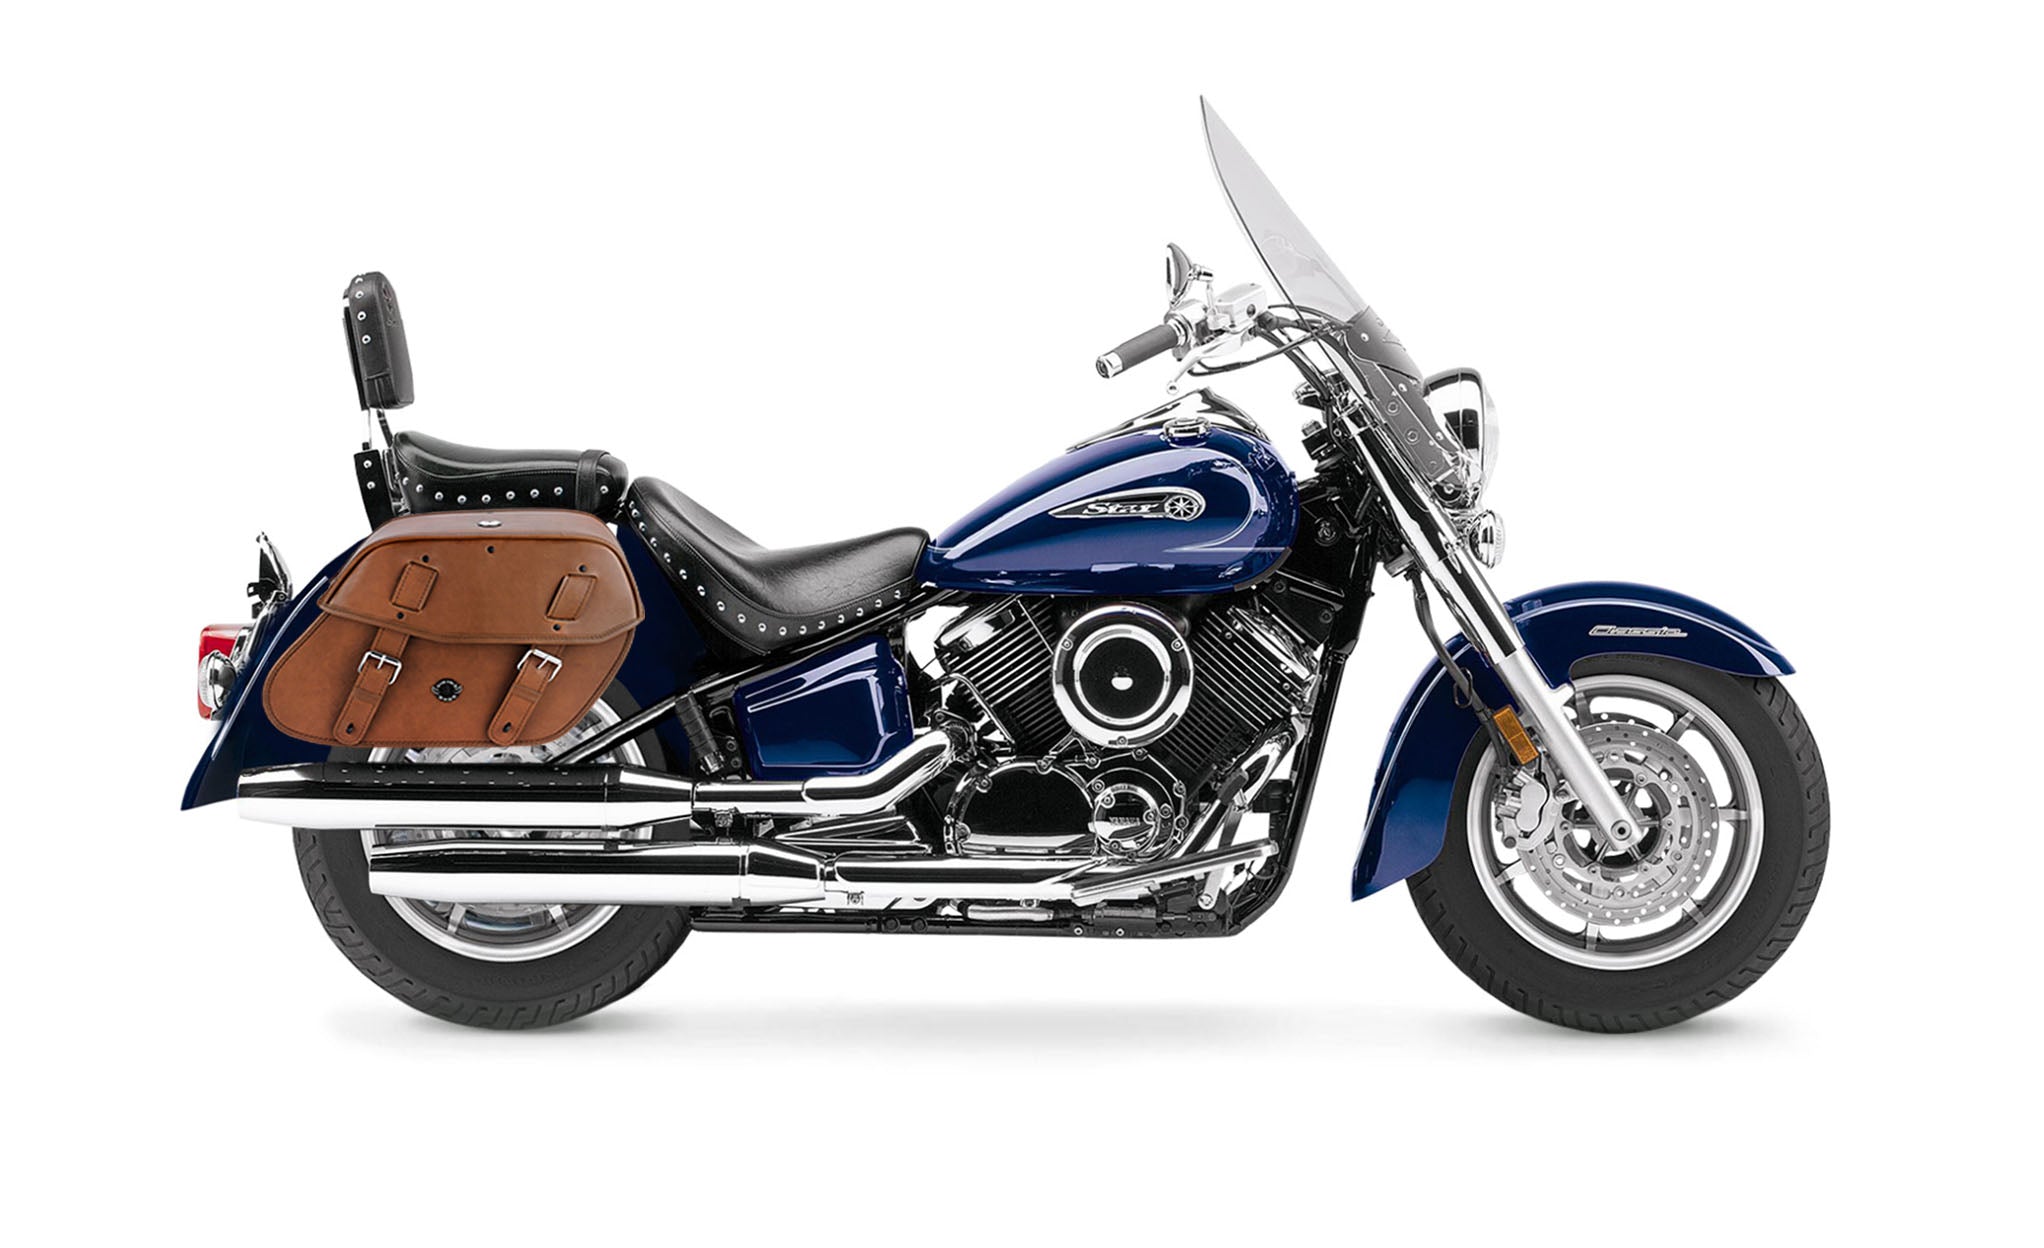 Viking Odin Brown Large Yamaha Silverado Leather Motorcycle Saddlebags on Bike Photo @expand